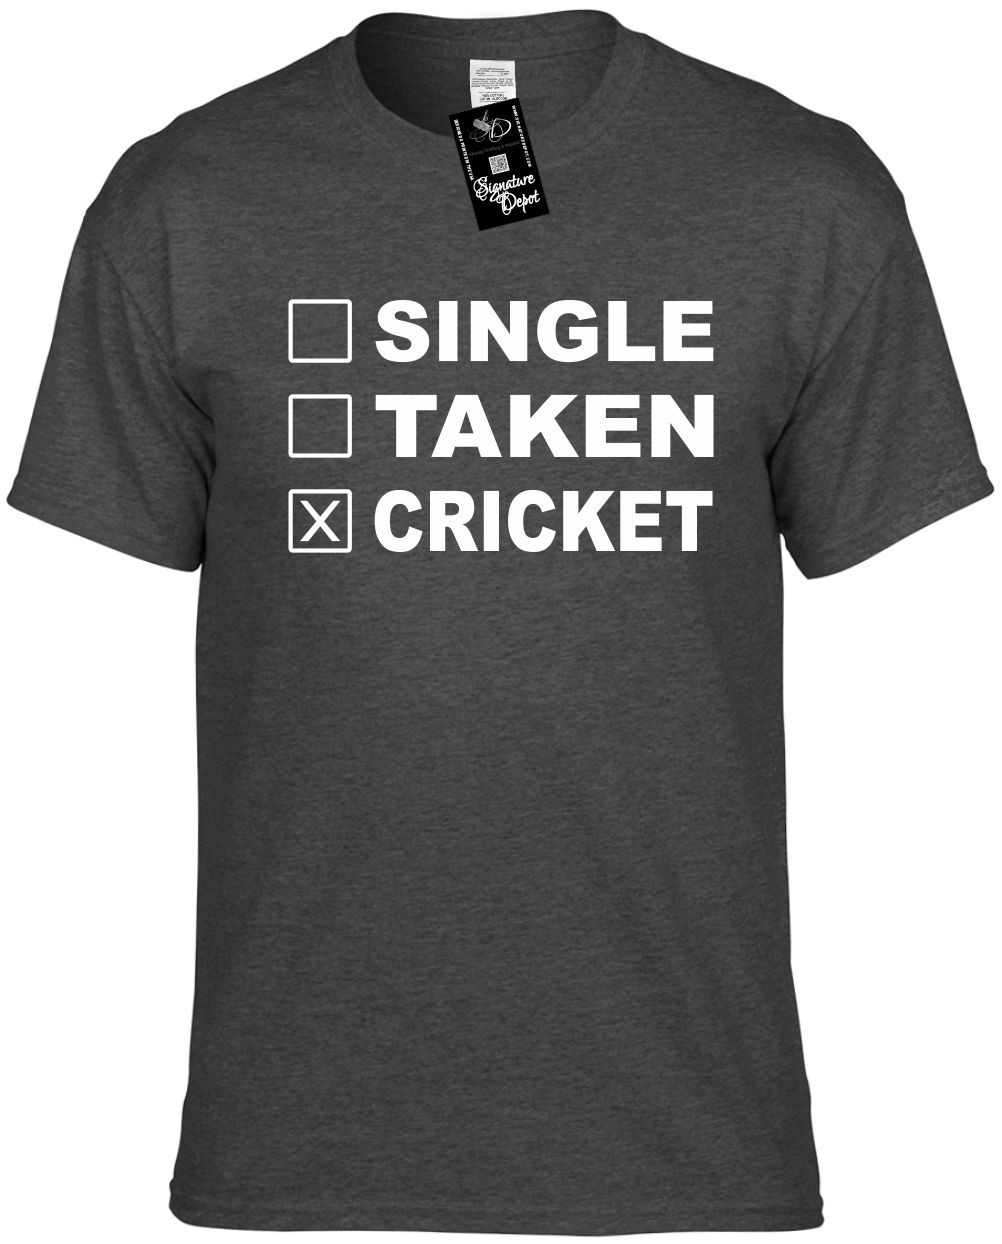 sa cricket shirt